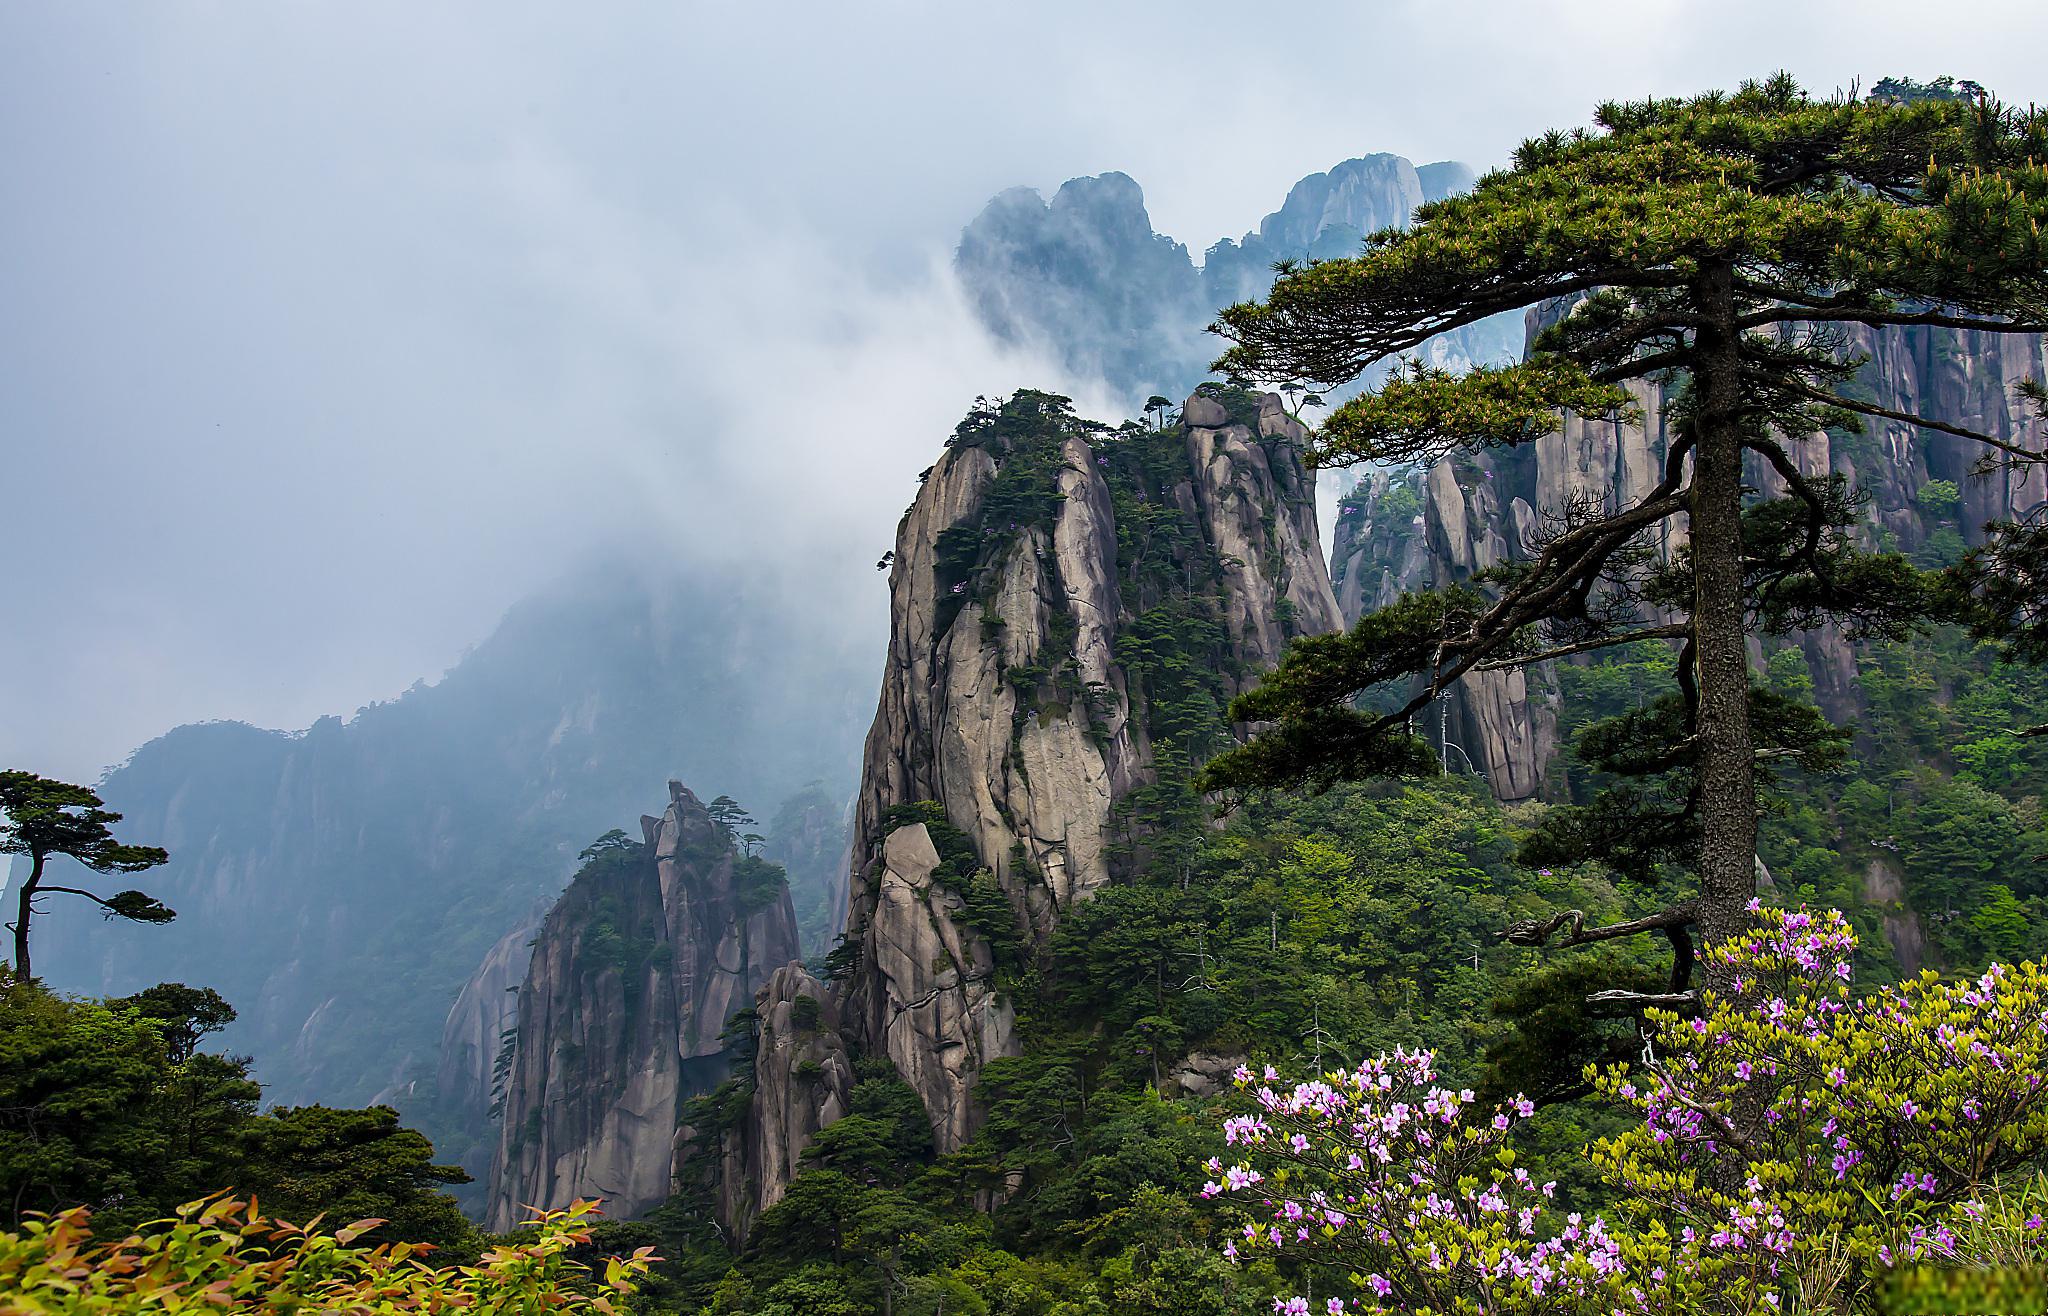 黄山四季旅游指南 黄山,位于中国安徽省南部,是中国著名的风景名胜区